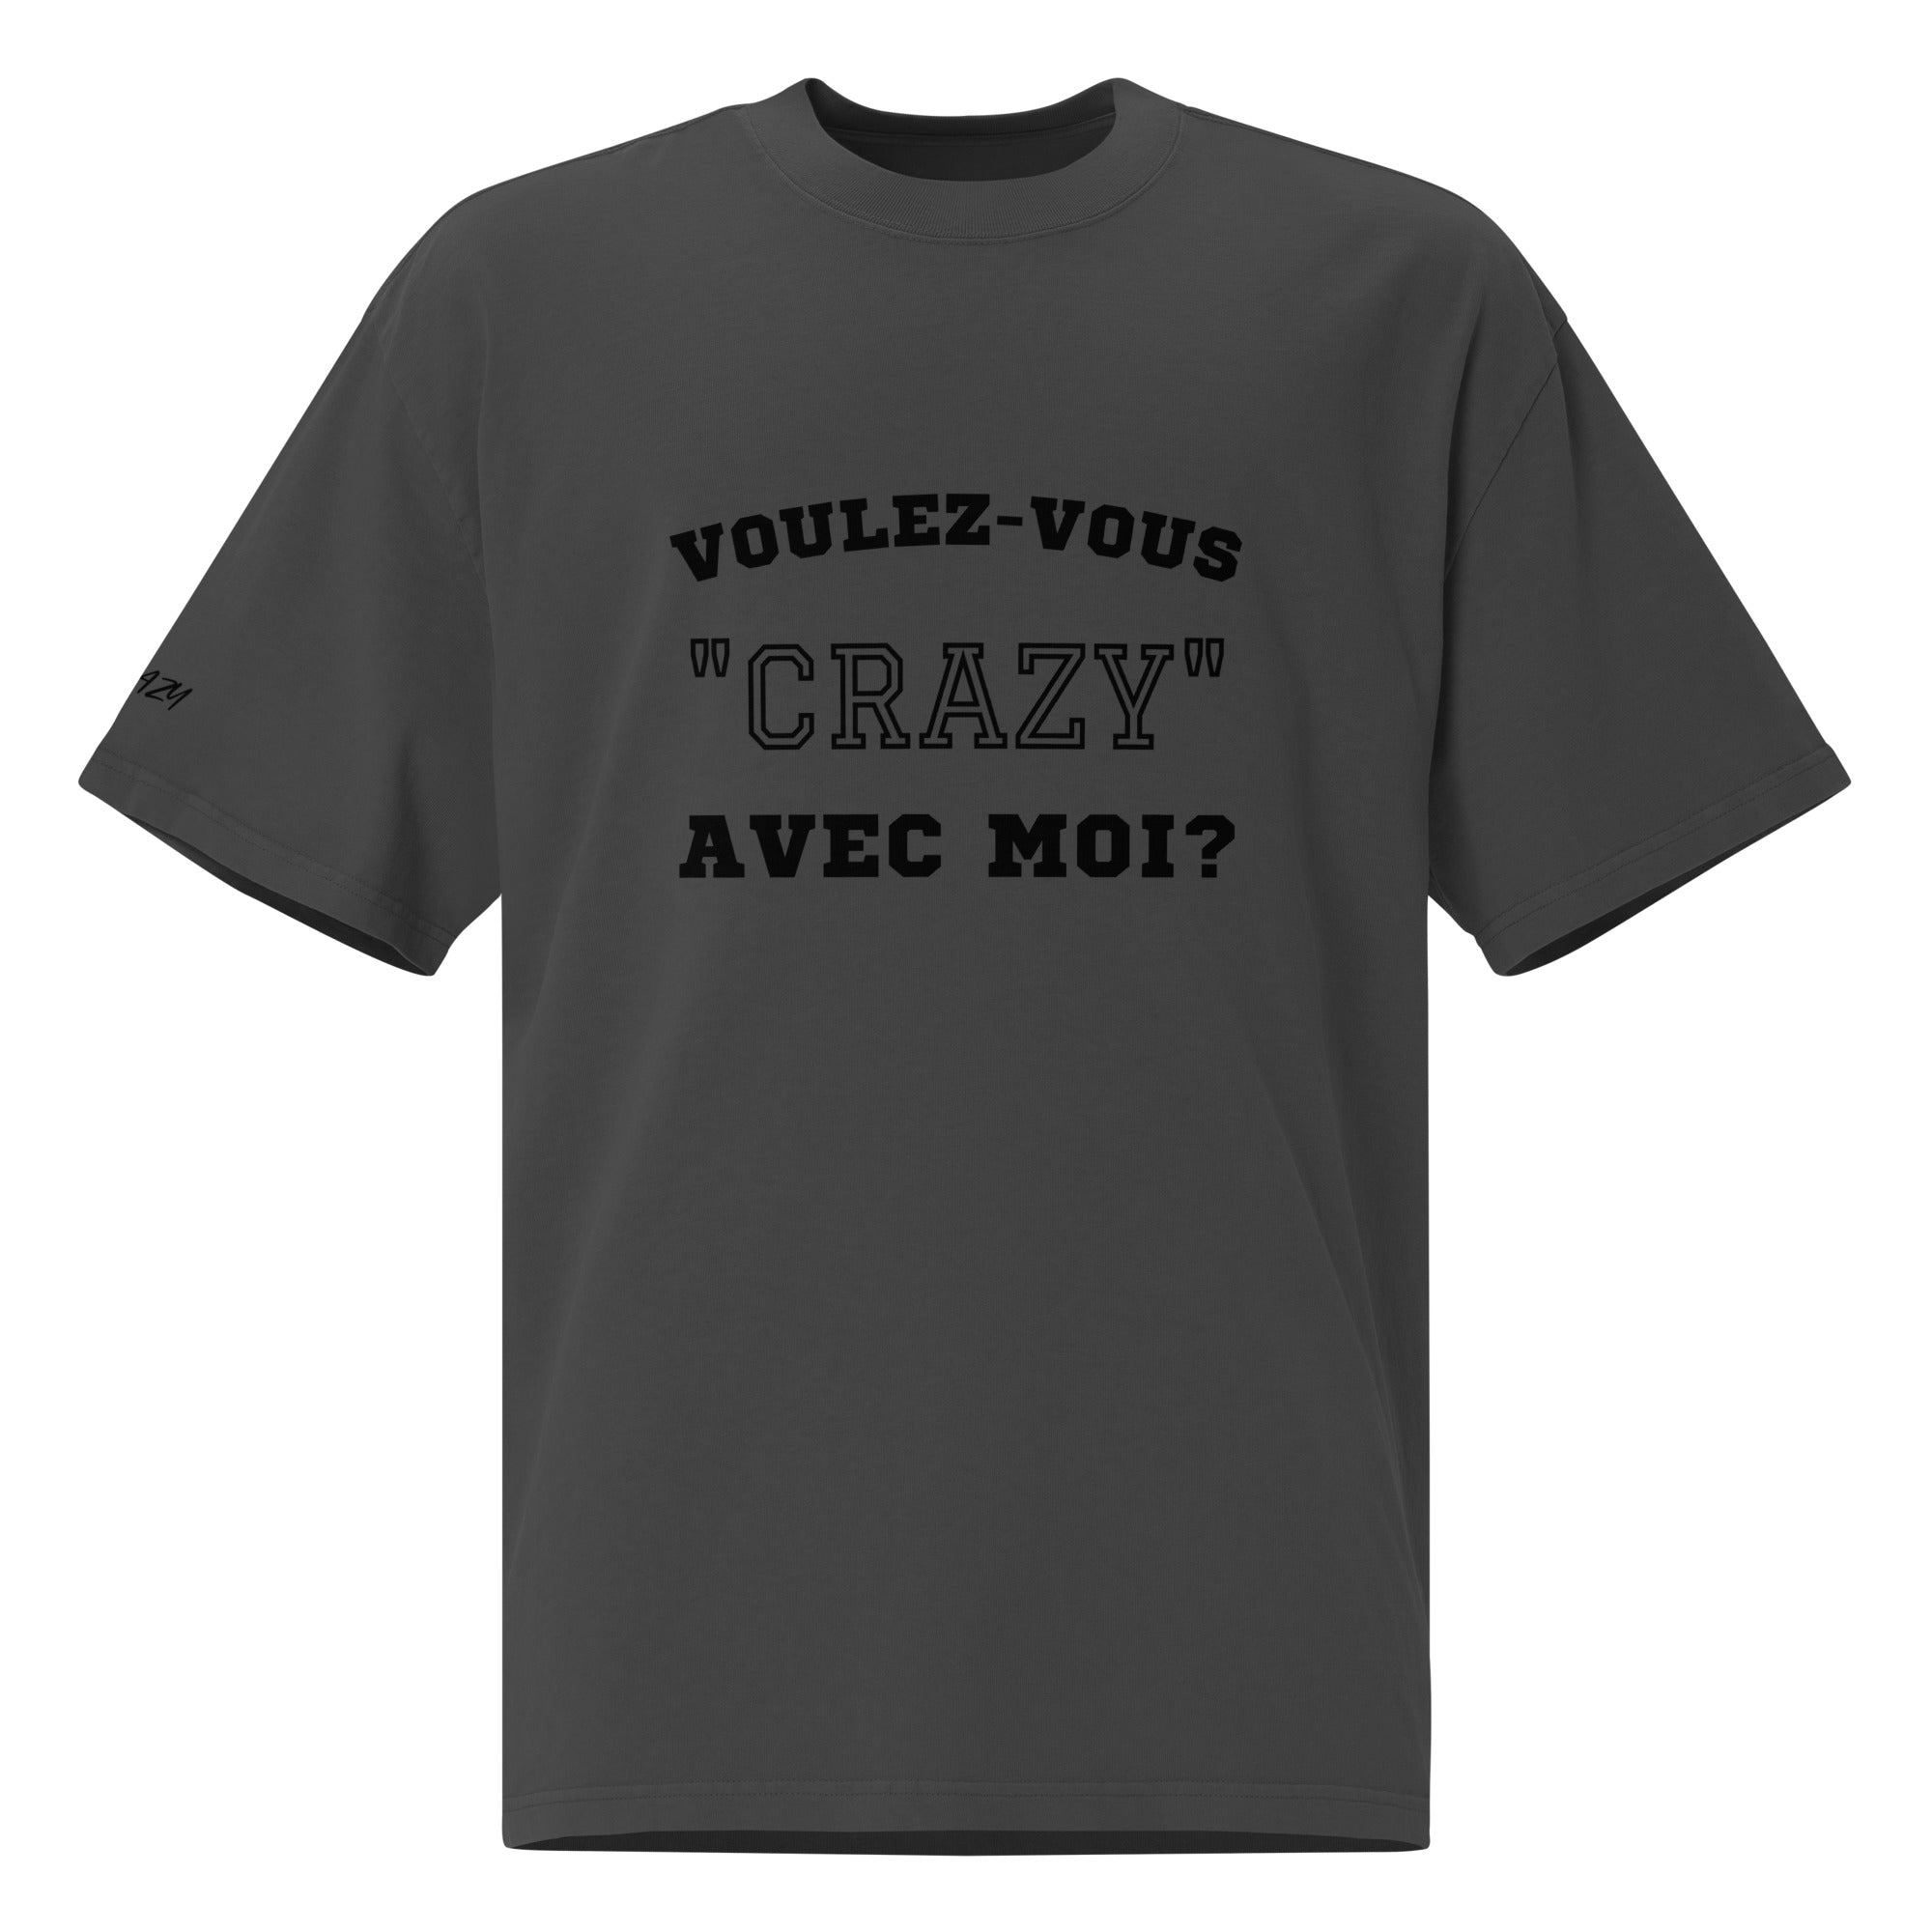 Faded oversized t-shirt "Voulez-vous..."